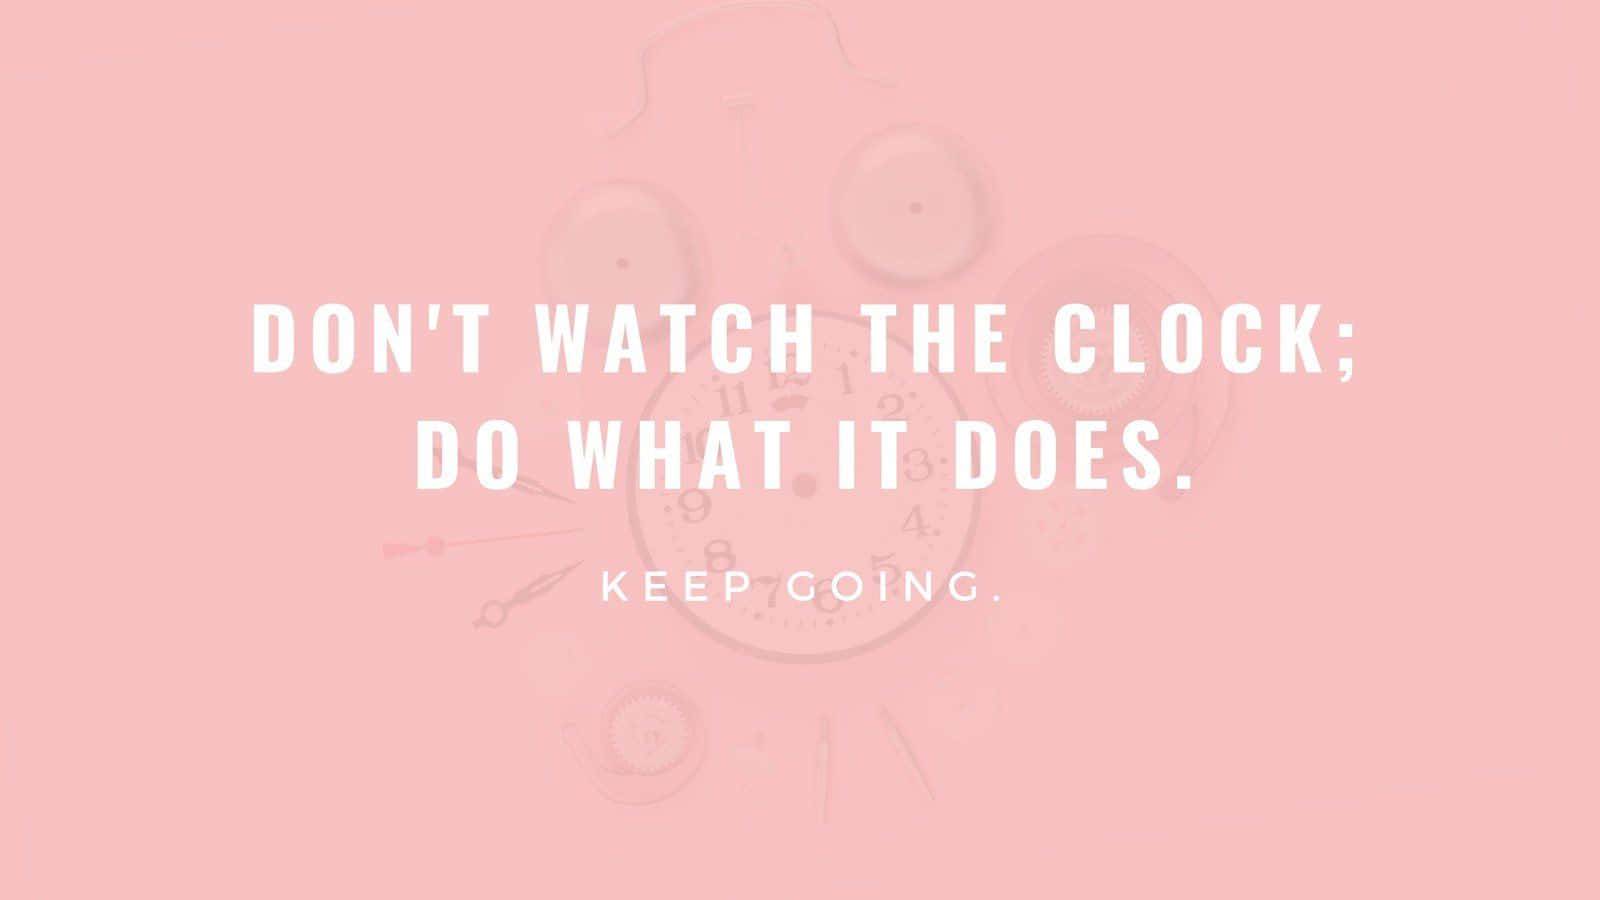 Hold ikke øje med uret, gør det, som det gør bedst - fortsæt med at bevæge dig. Wallpaper